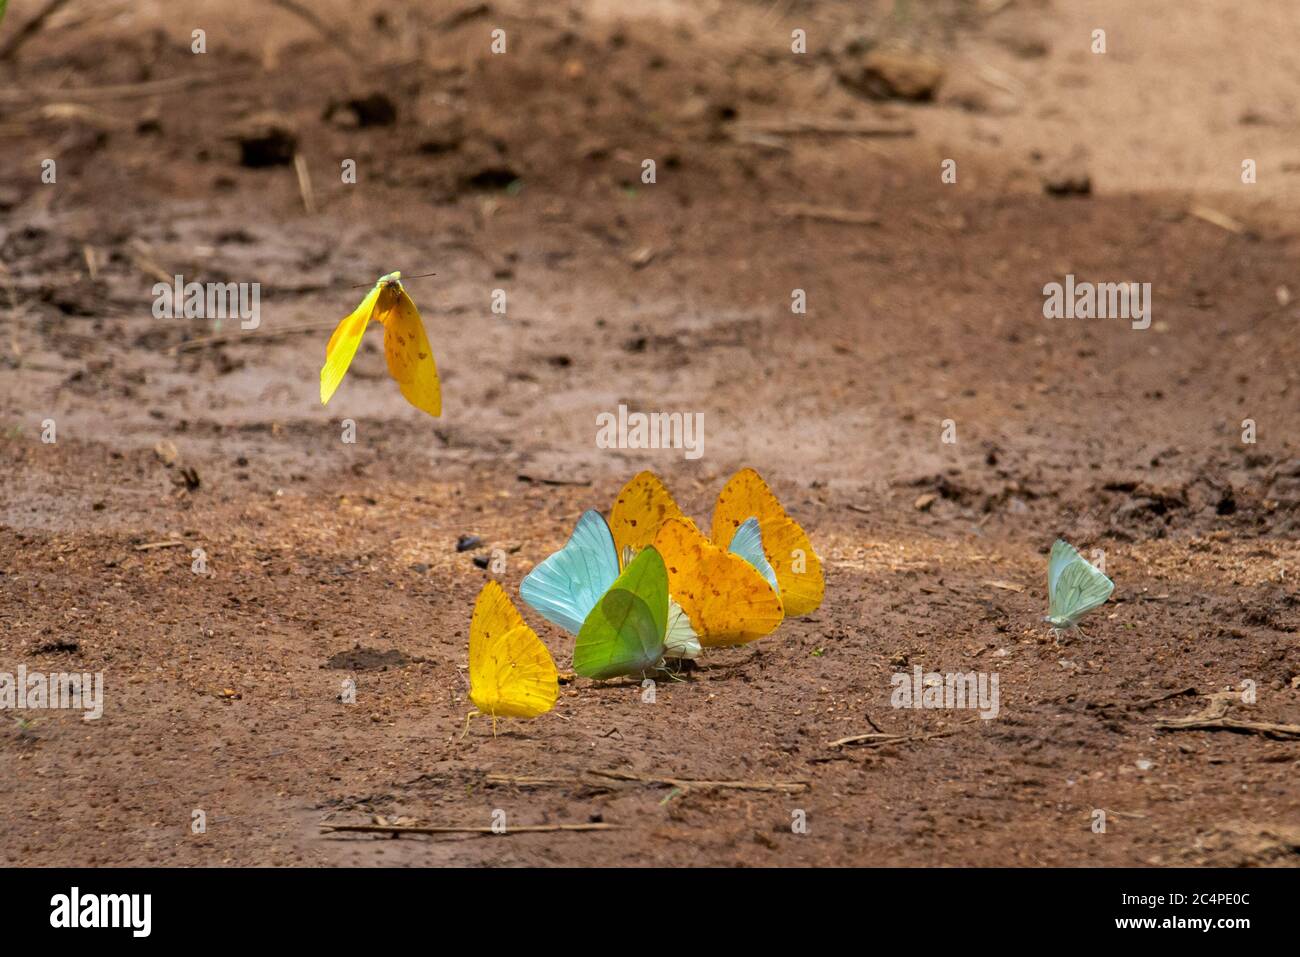 Detalle de un colectivo de mariposas coloridas charcos. Están bebiendo humedad del barro para tomar sales y minerales del suelo. Foto de stock